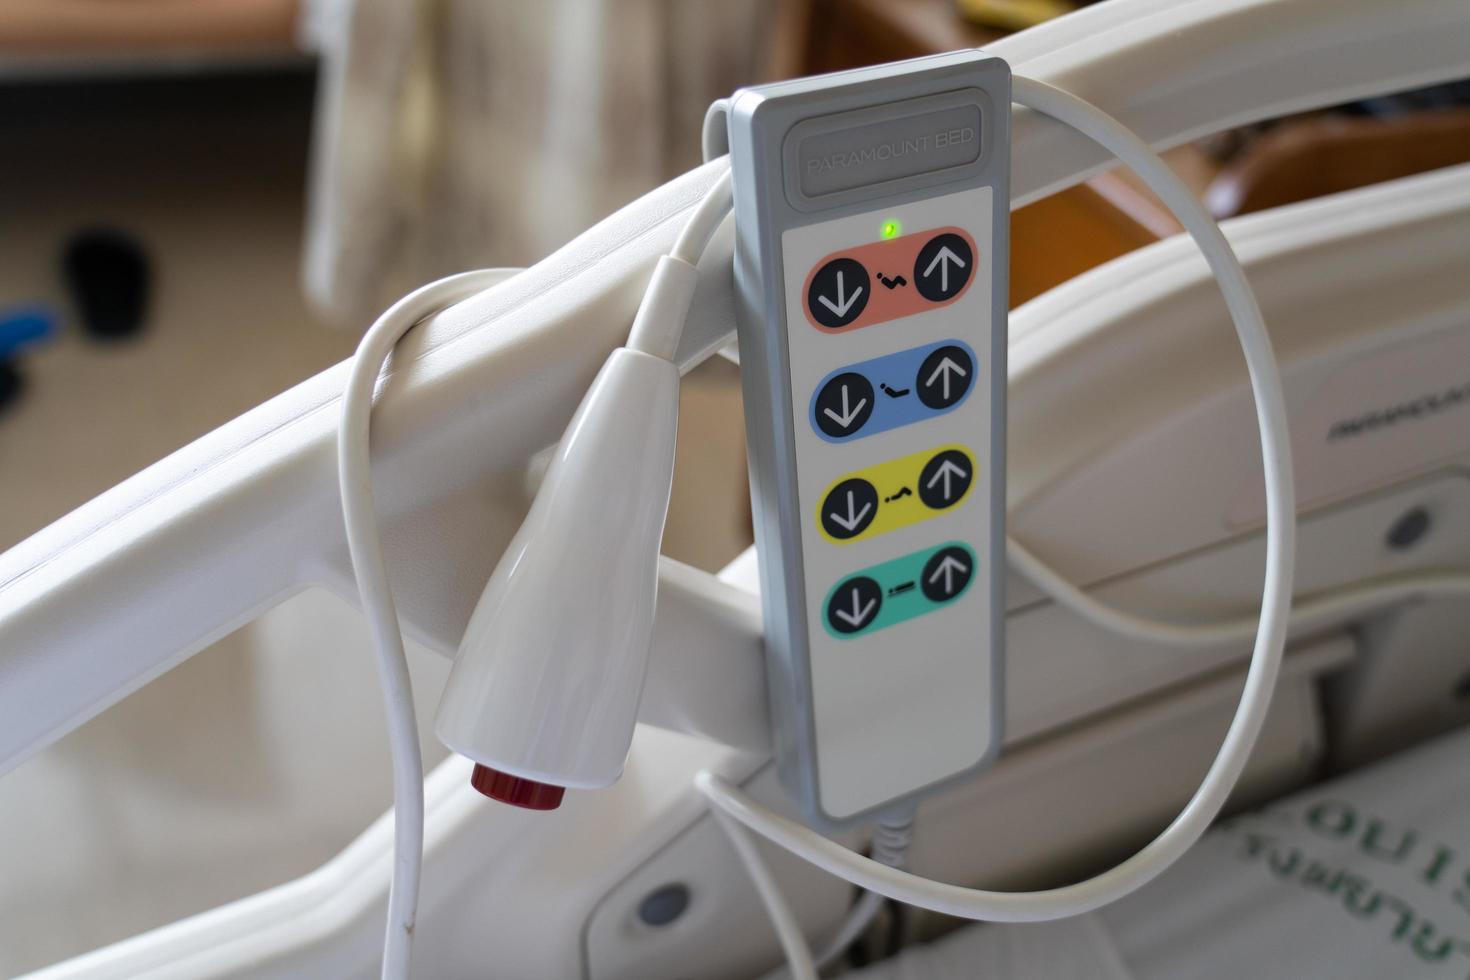 vista del botón de emergencia y control remoto para ajustar la cama del paciente en el hospital. foto